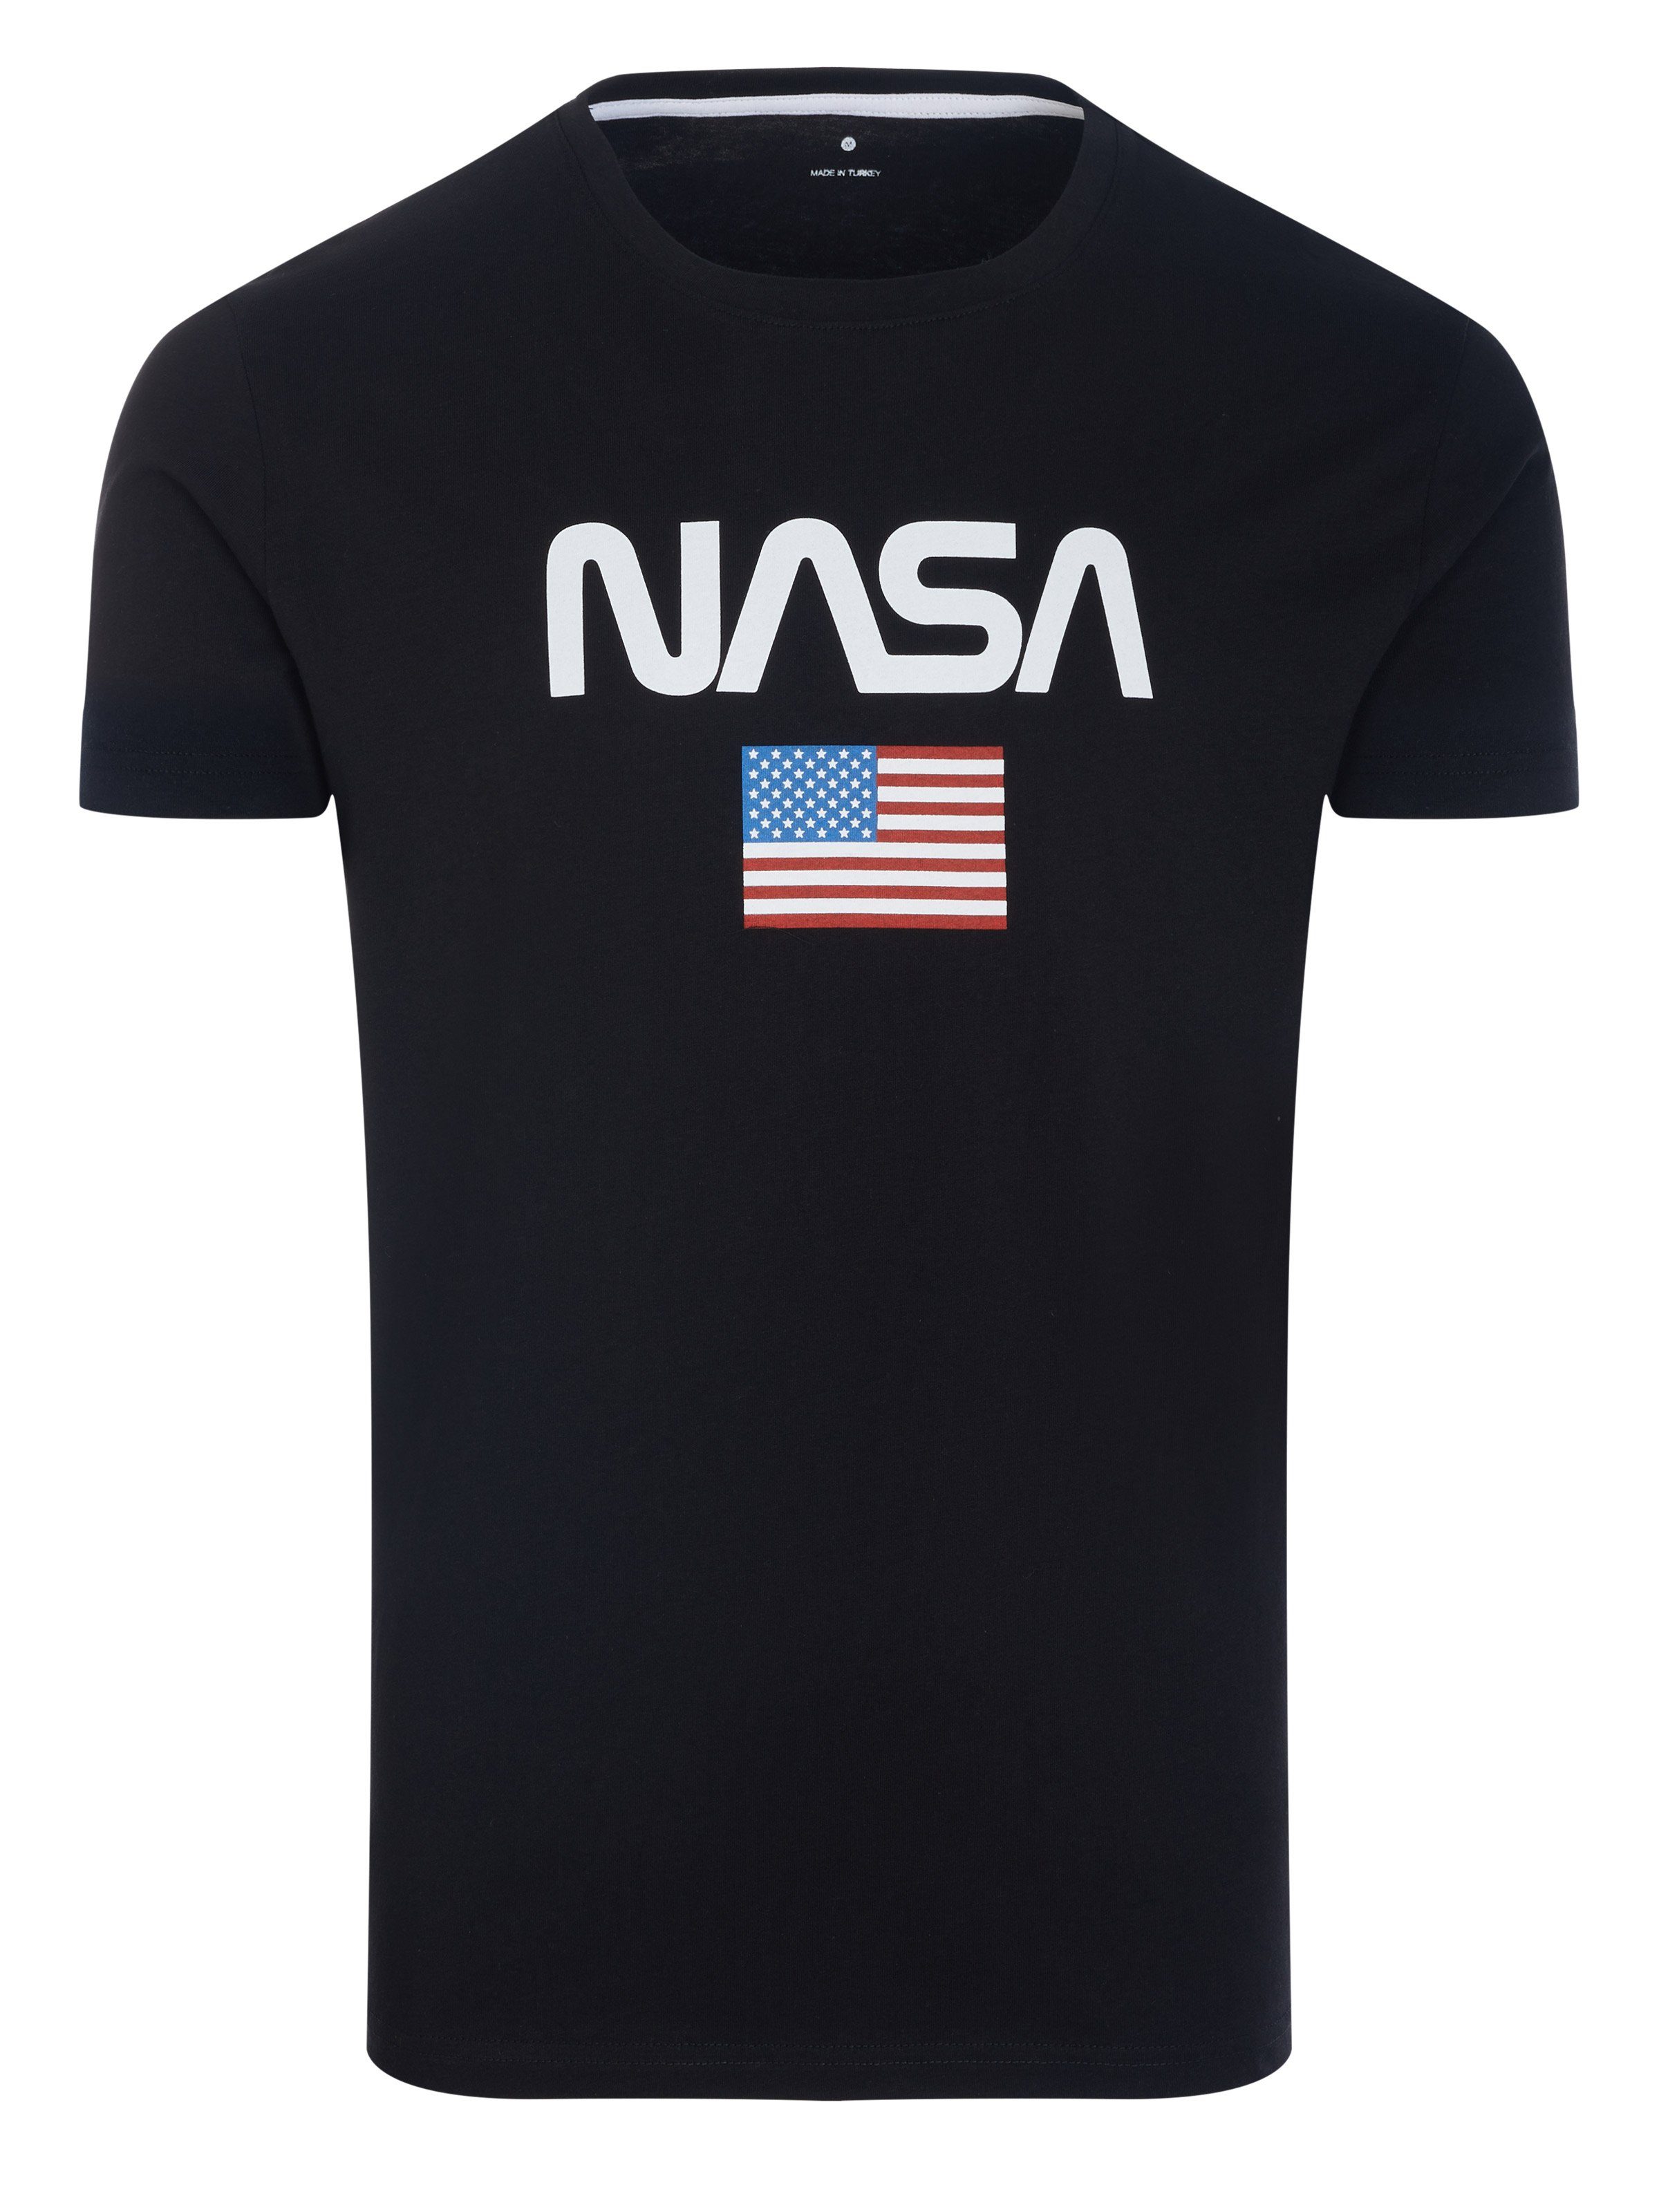 Von der Marke direkt geführter Laden NASA T-Shirt Nasa T-Shirt